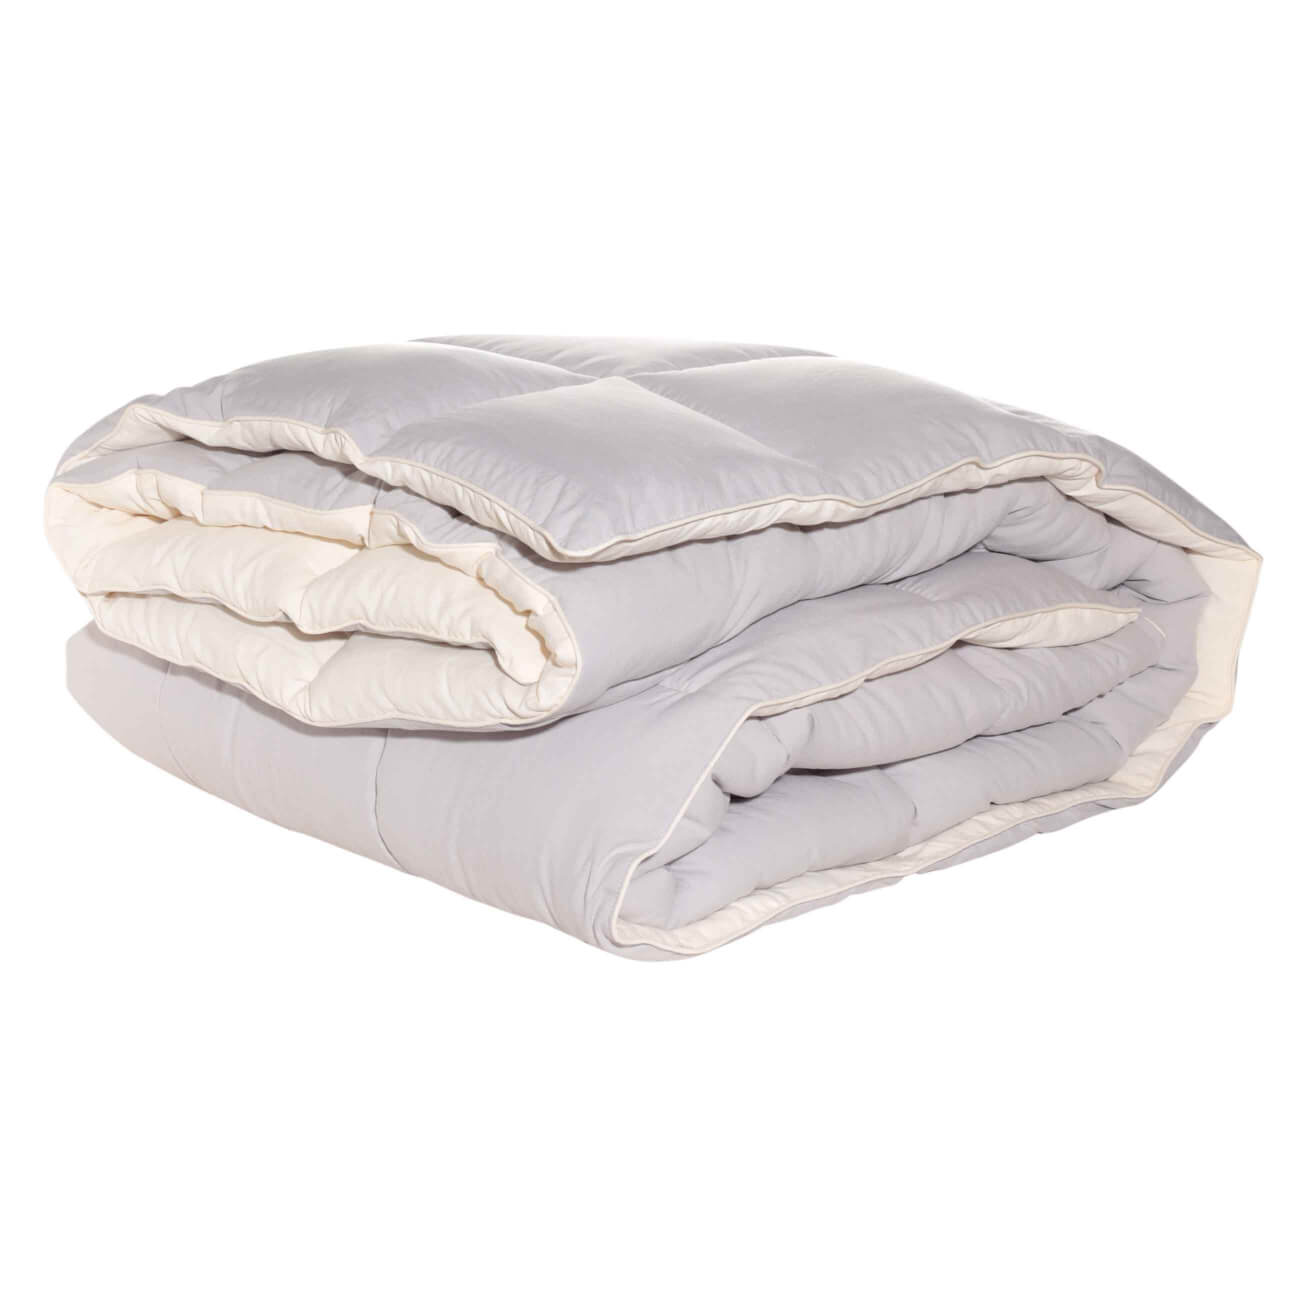 Одеяло, 140х200 см, микрофибра/холлофайбер, бежевое/молочное, Hollow fiber изображение № 1